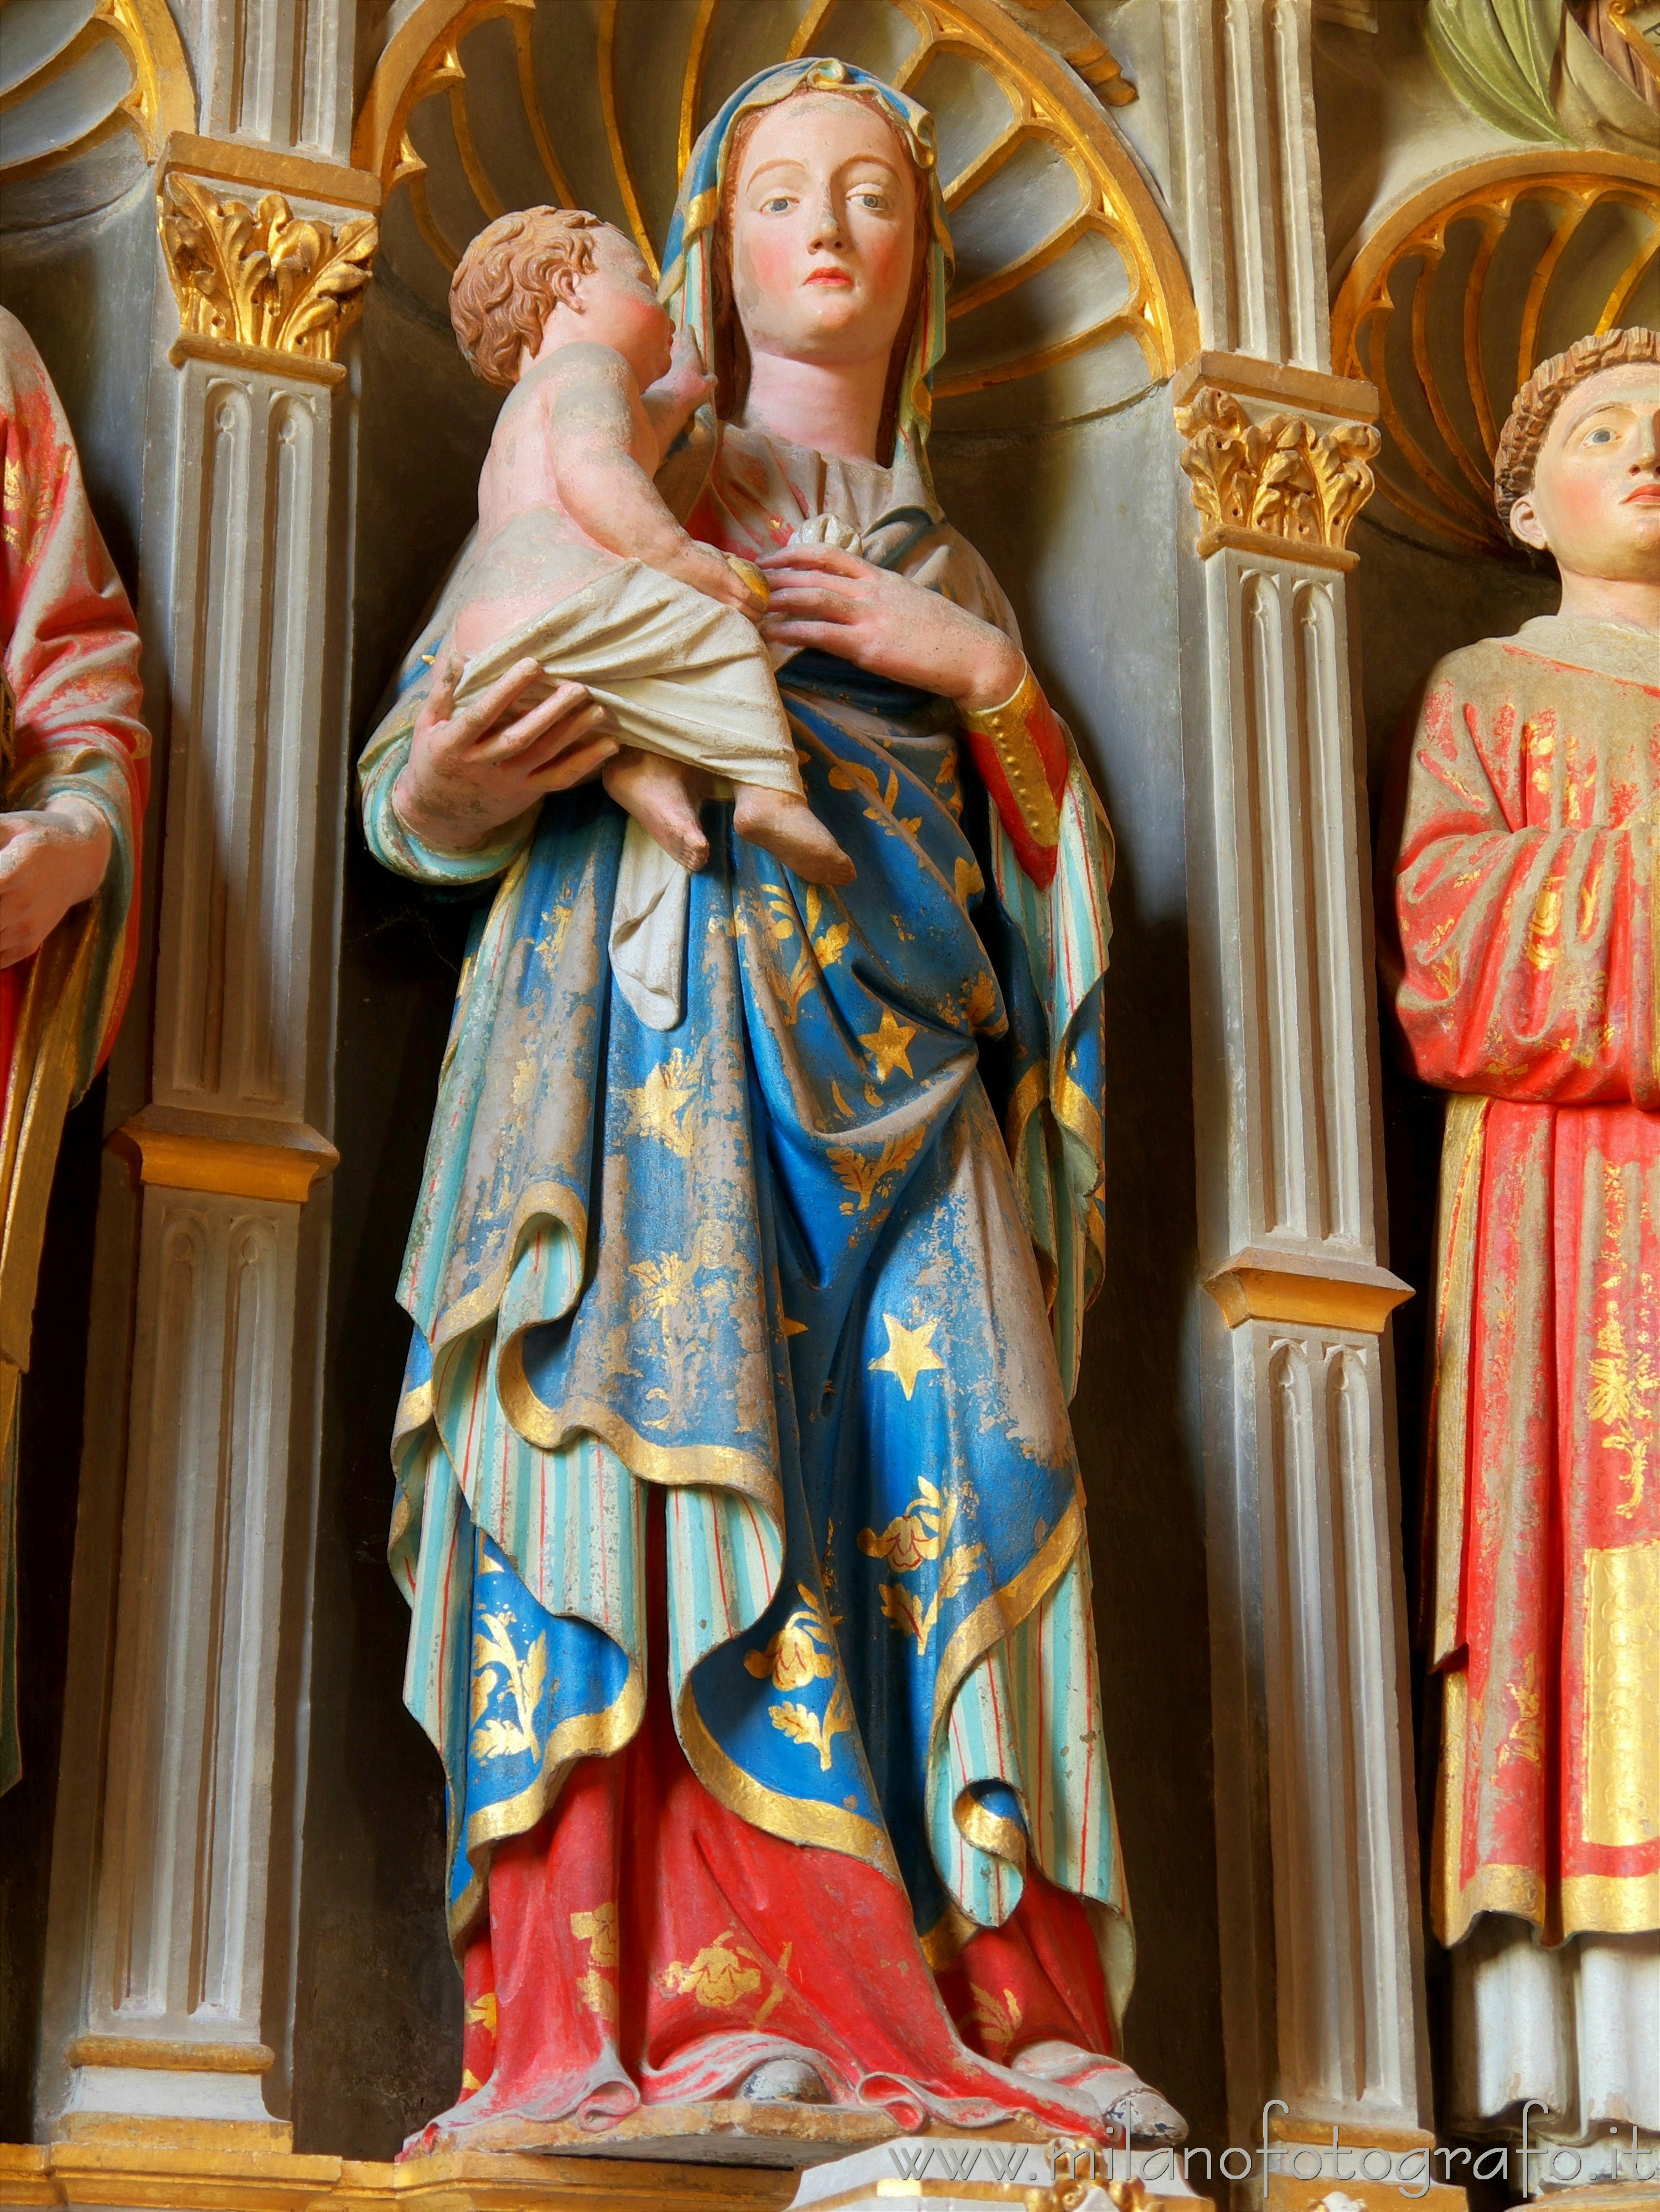 Castiglione Olona (Varese, Italy): Statue of Virgin with Child in the Collegiate Church - Castiglione Olona (Varese, Italy)